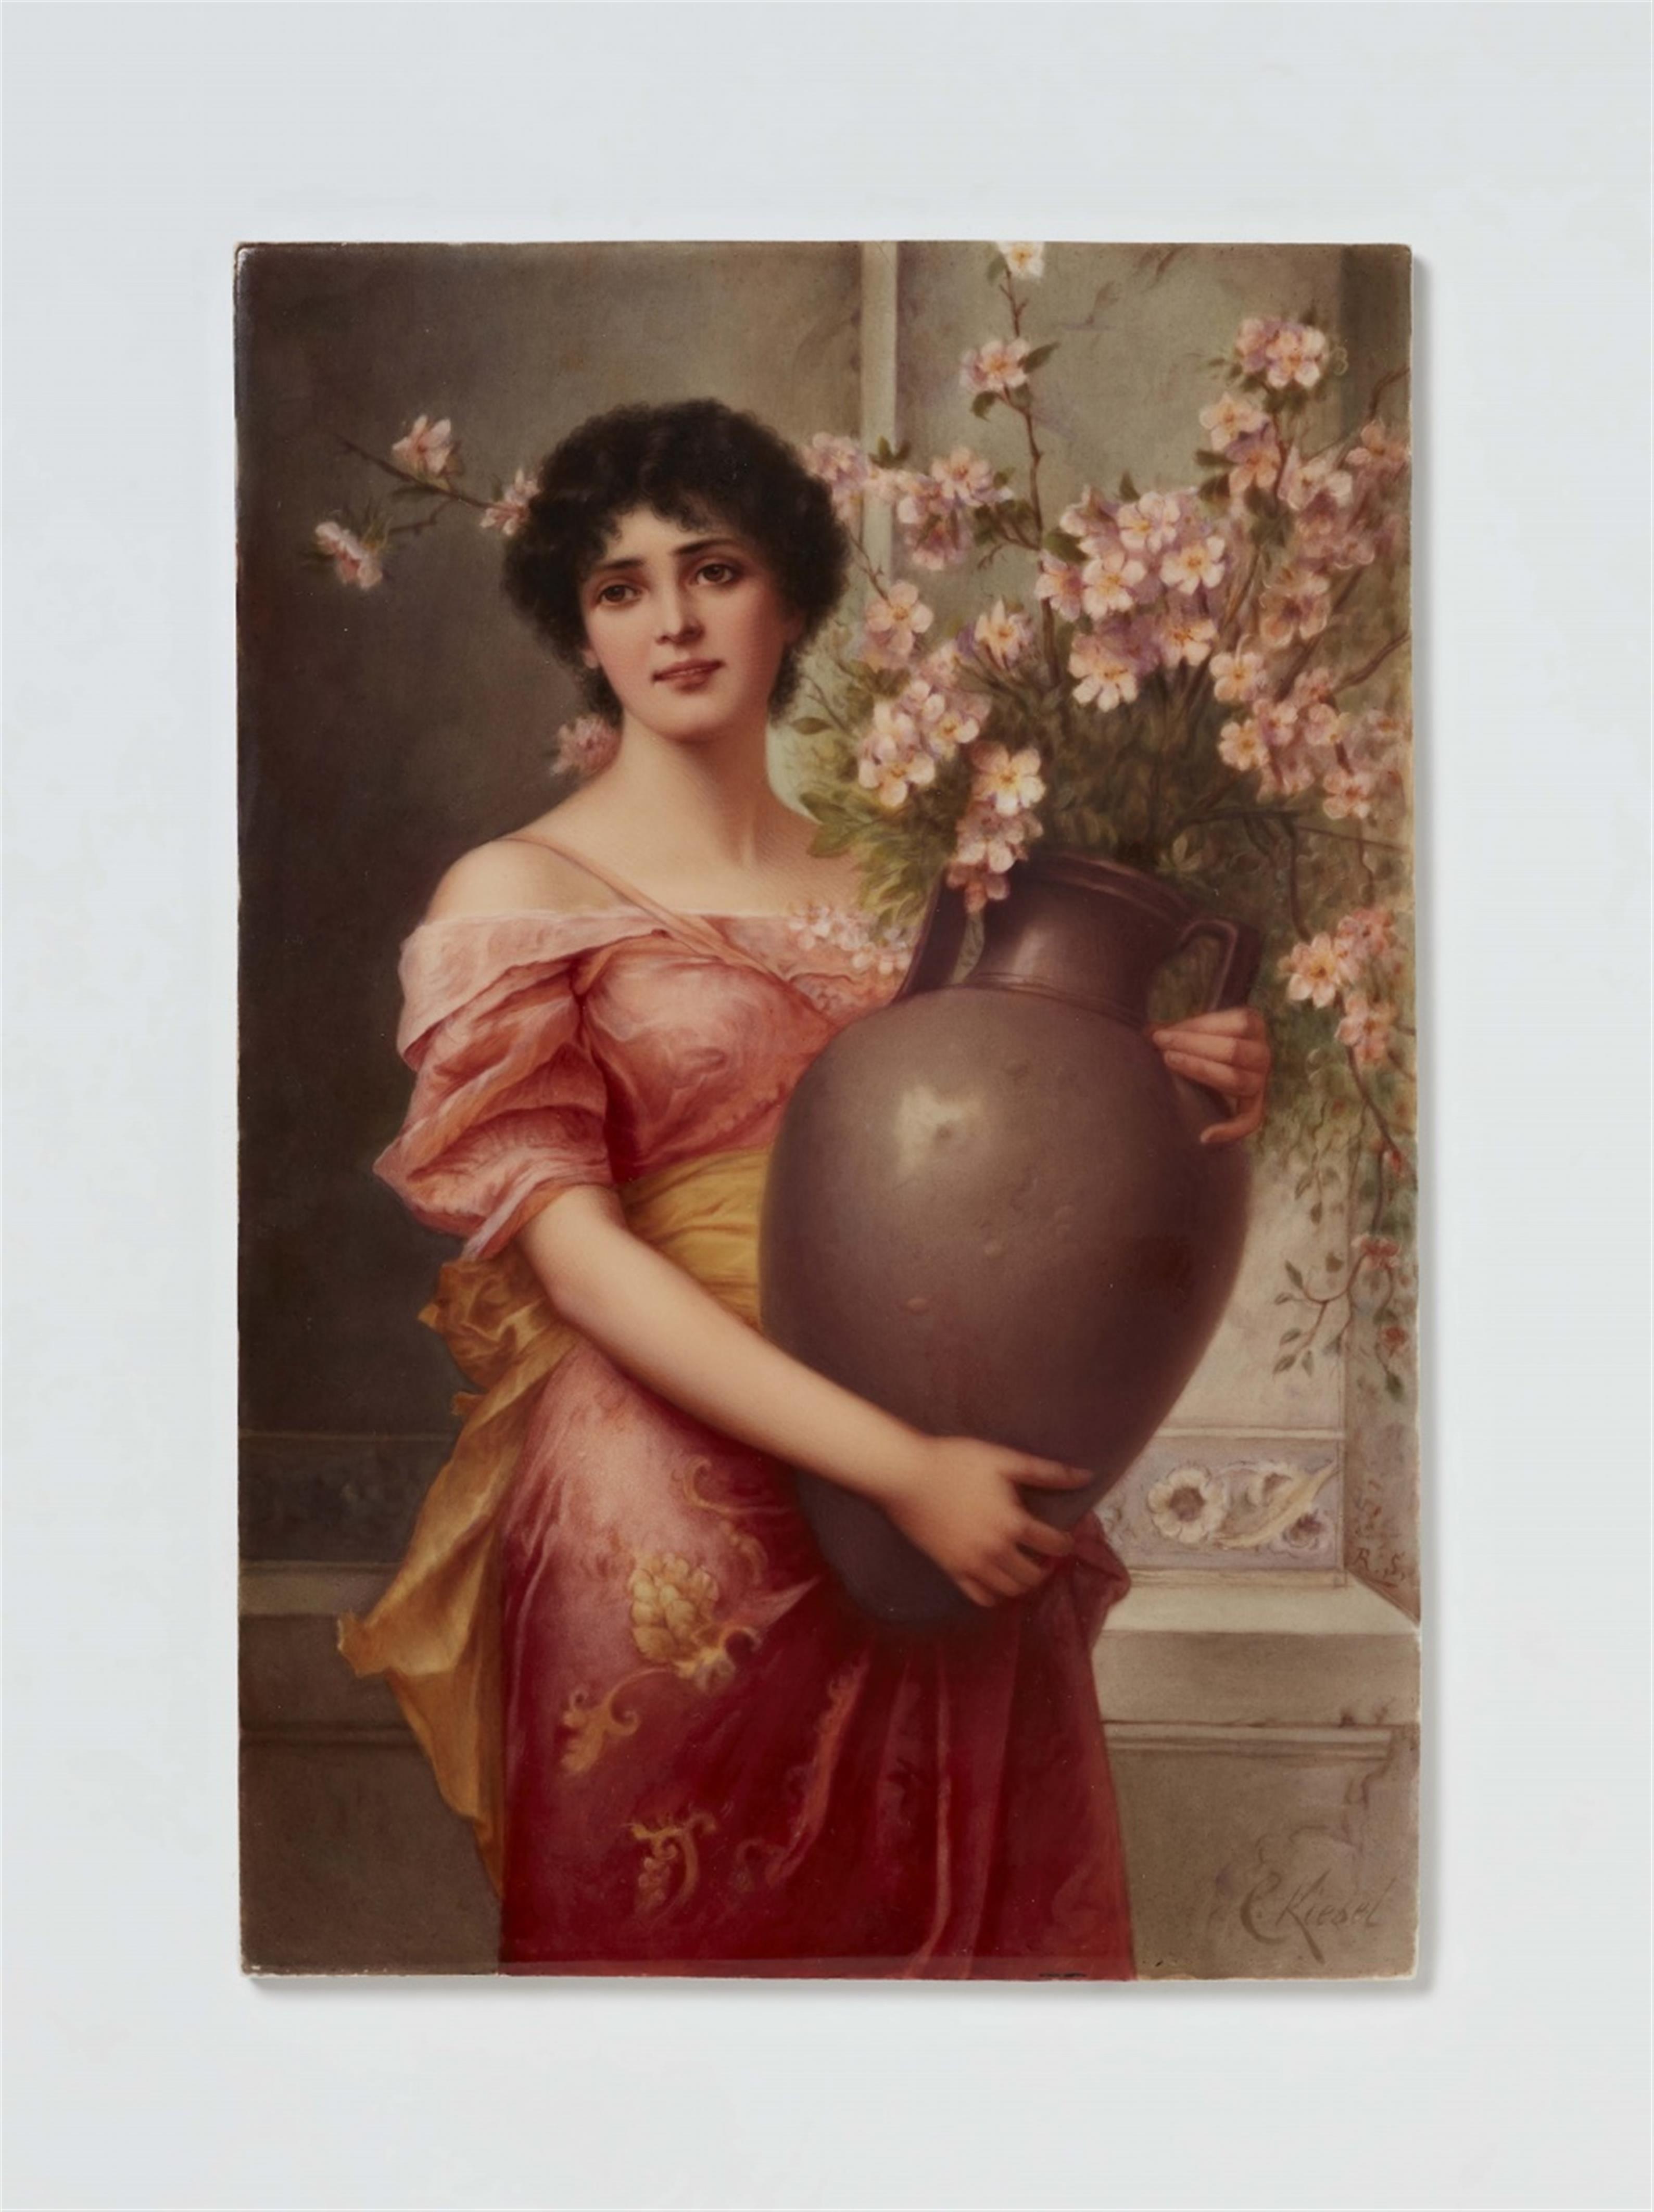 Bildplatte mit Gemäldereproduktion "Apfelblüte" nach Conrad Kiesel - 